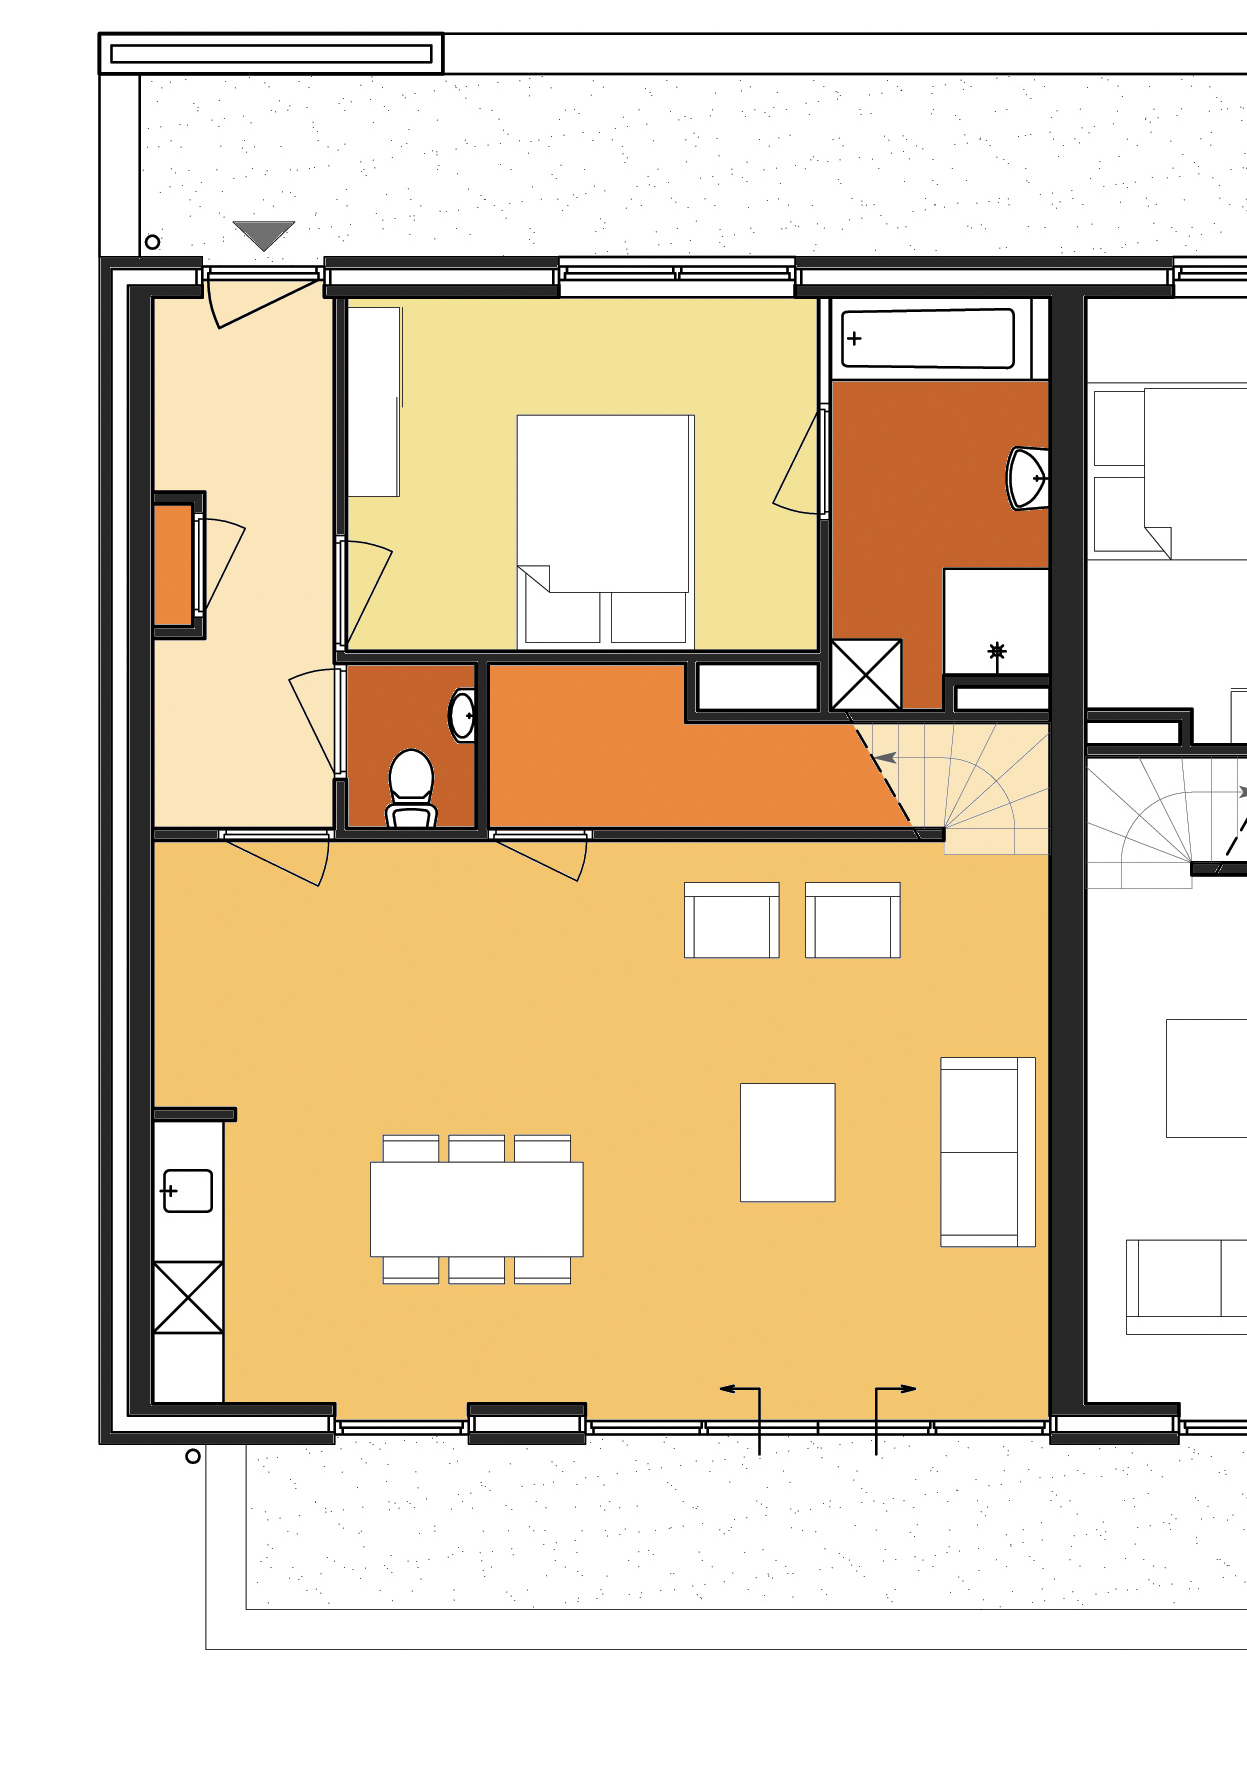 I I Appartement type I - 165 m 2 (bruto vloeroppervlak)